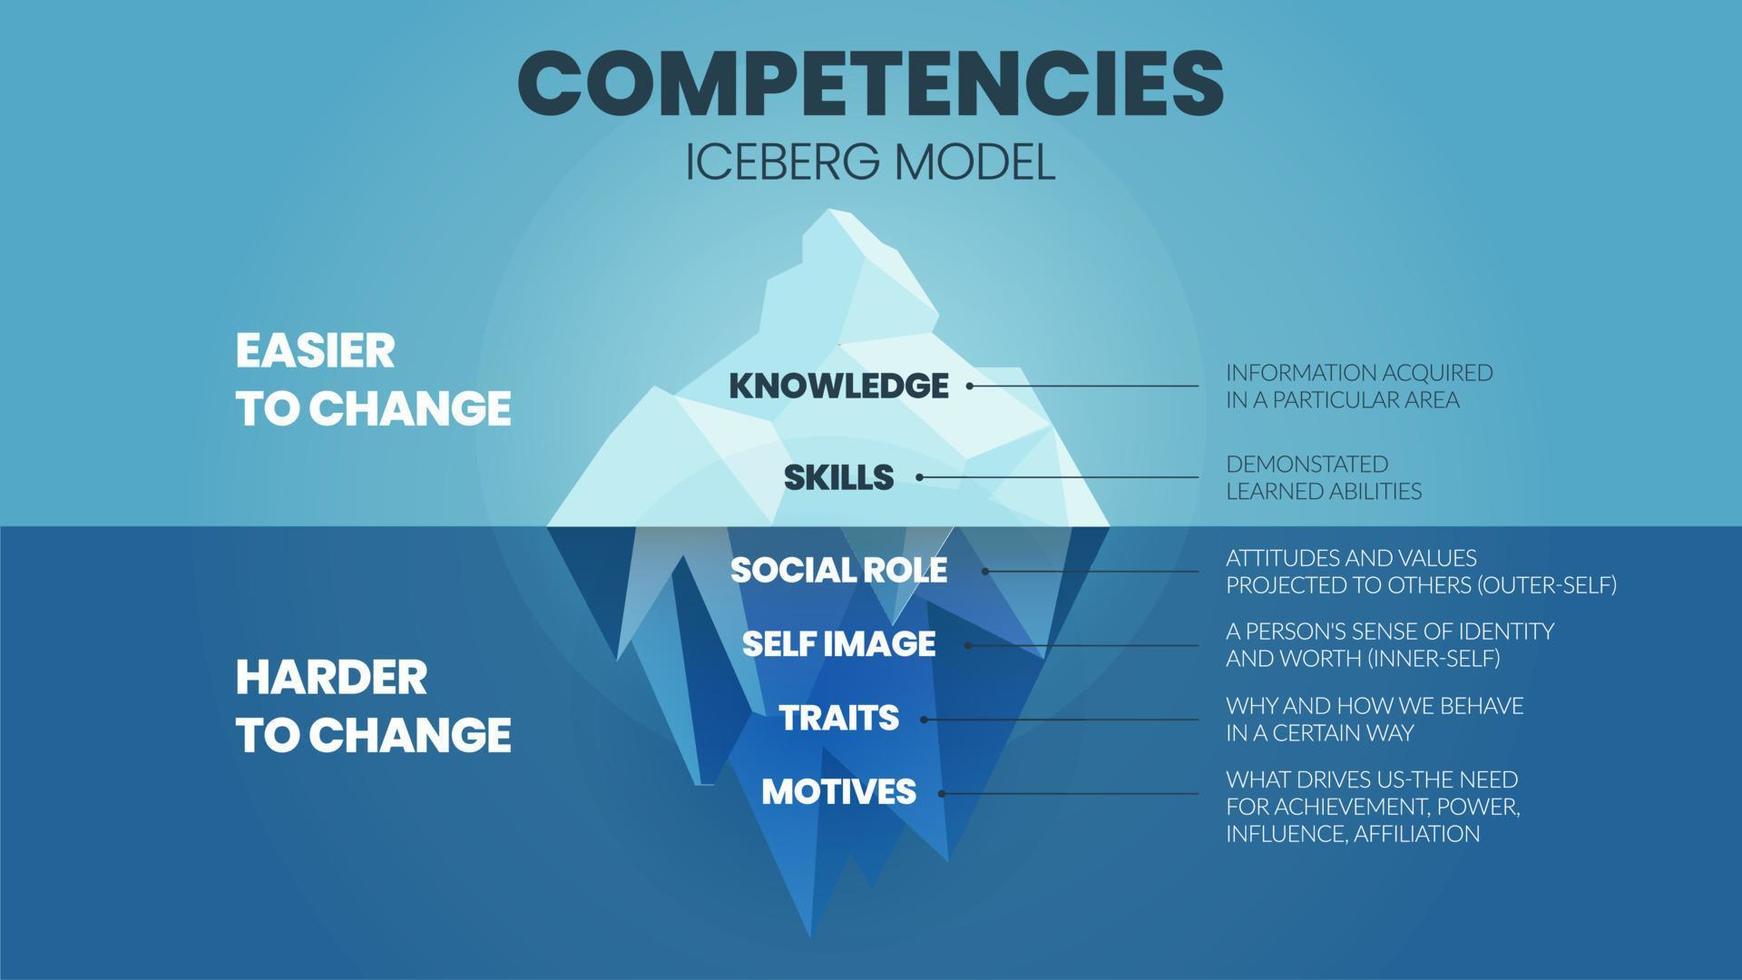 uma ilustração vetorial de competências modelo iceberg conceito hrd tem 2 elementos de melhoria de competência do funcionário superior é conhecimento e habilidade fácil de mudar, mas o atributo subaquático é mais difícil vetor